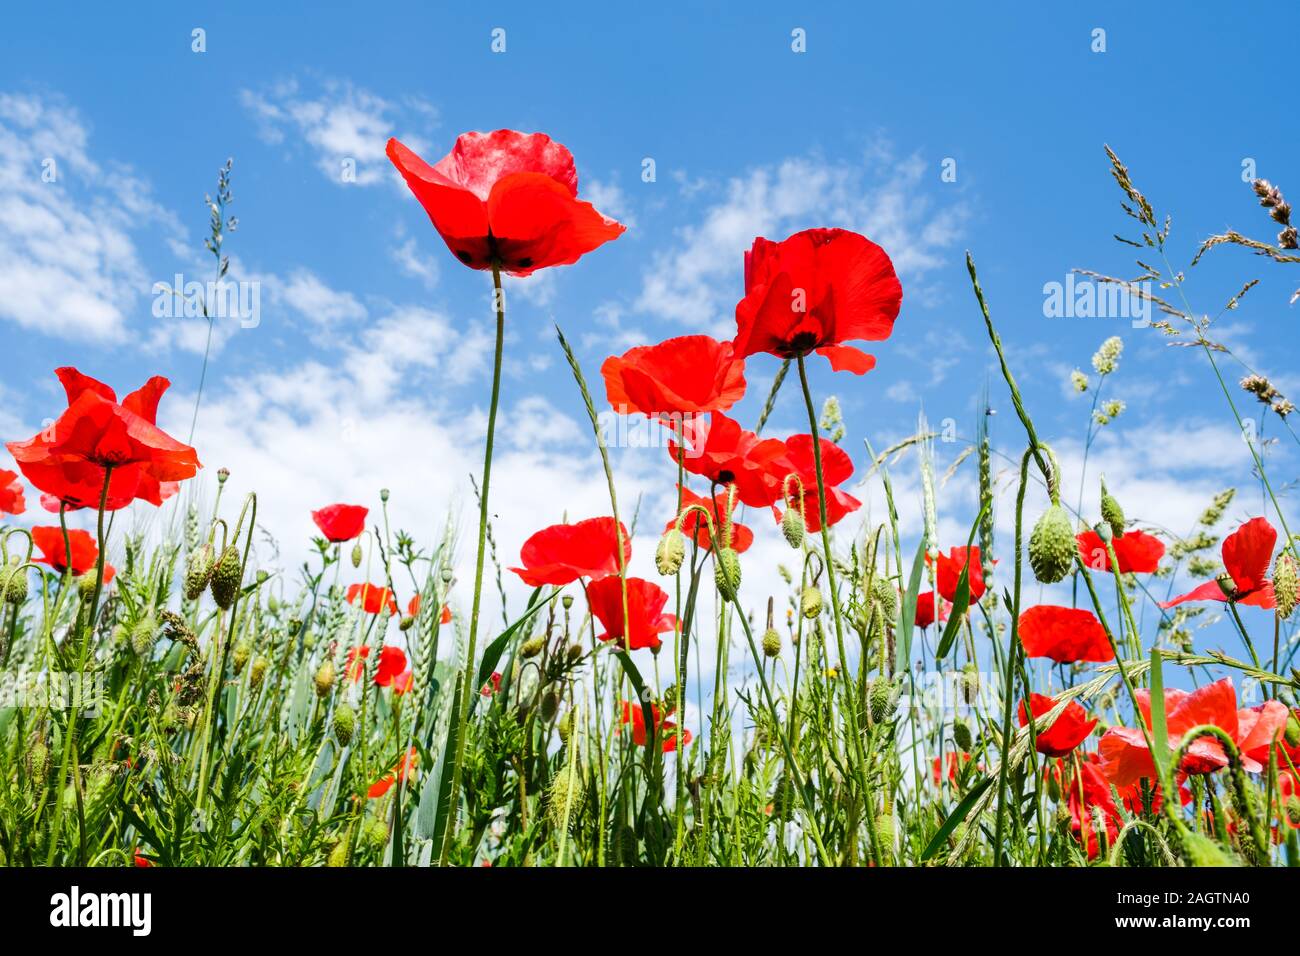 Frosch Perspektive Schuß von schönen roten Mohnblumen am Rande eines Weizenfeld mit einem wunderschönen blauen Himmel mit weißen Wolken als Hintergrund. Stockfoto